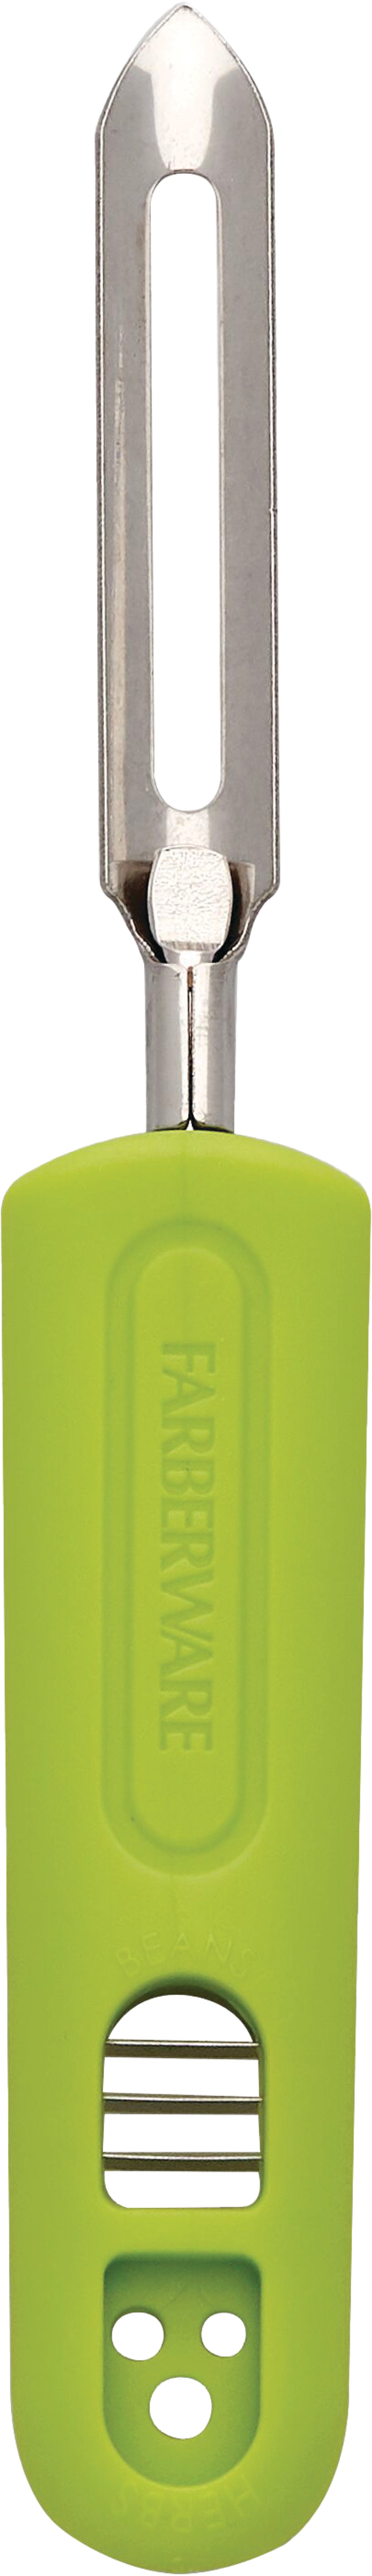 Buy Farberware Stainless Steel Vegetable Peeler Green